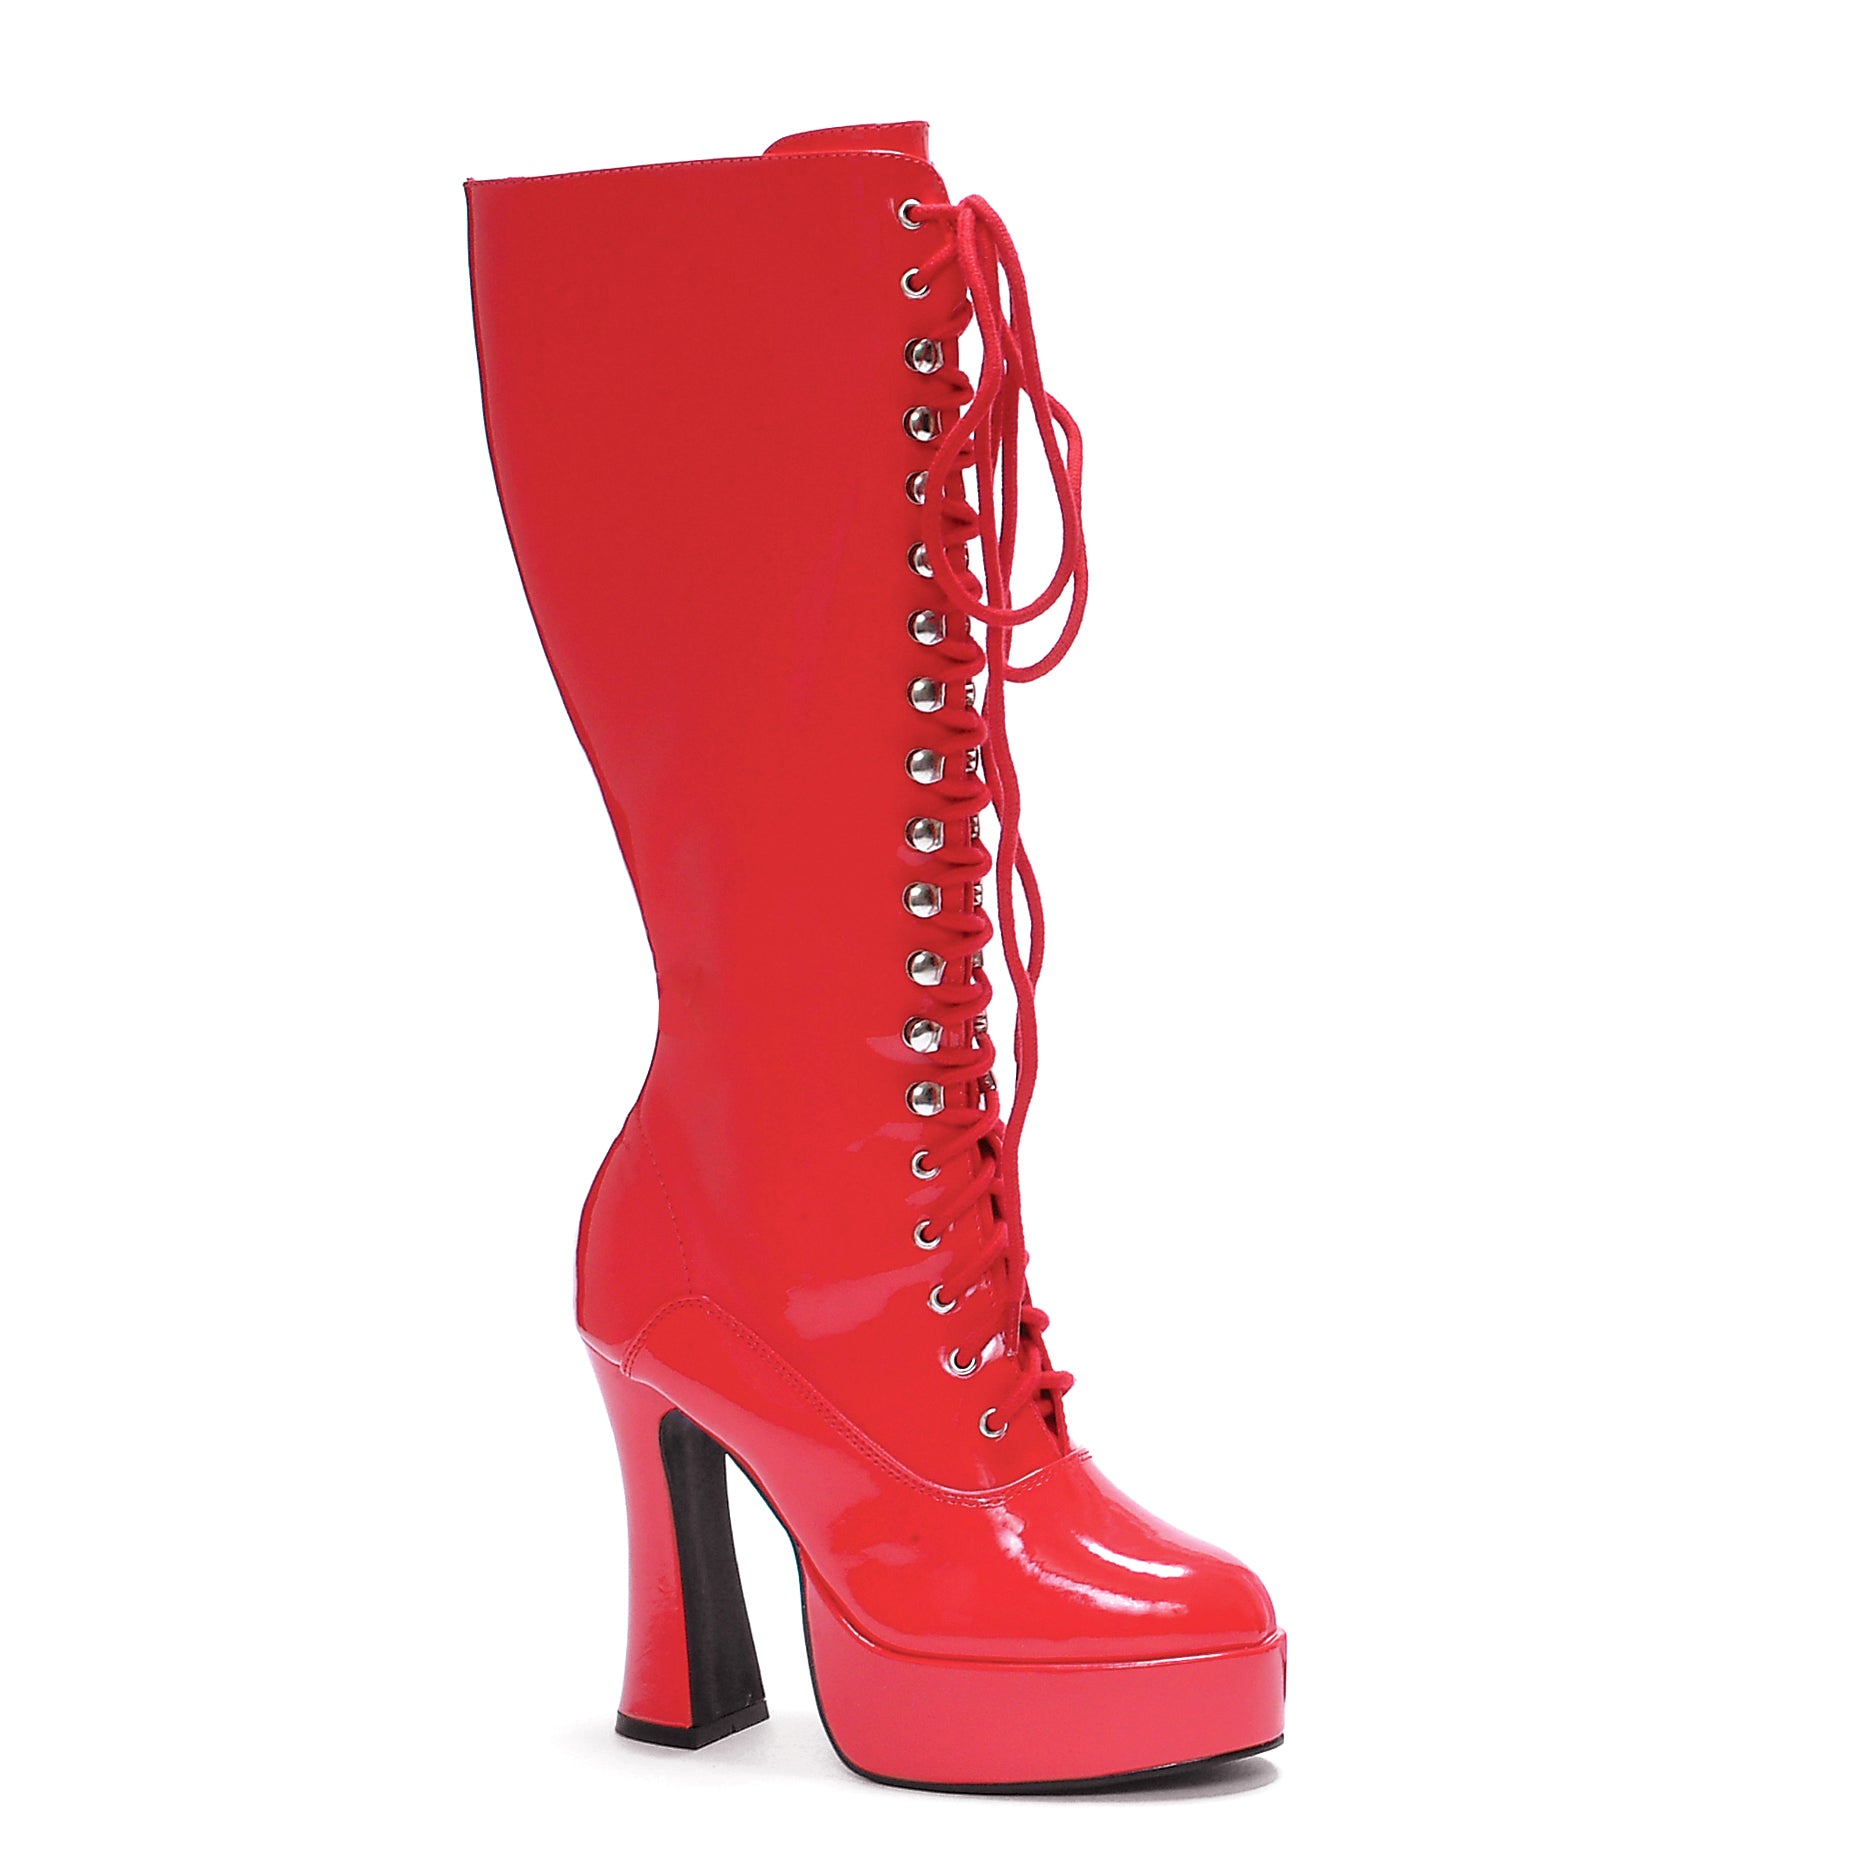 EASY Ellie Shoes 5" Heel Knee Boots W/Zipper. EXTENDED S 5 INCH HEEL KNEE HIGH